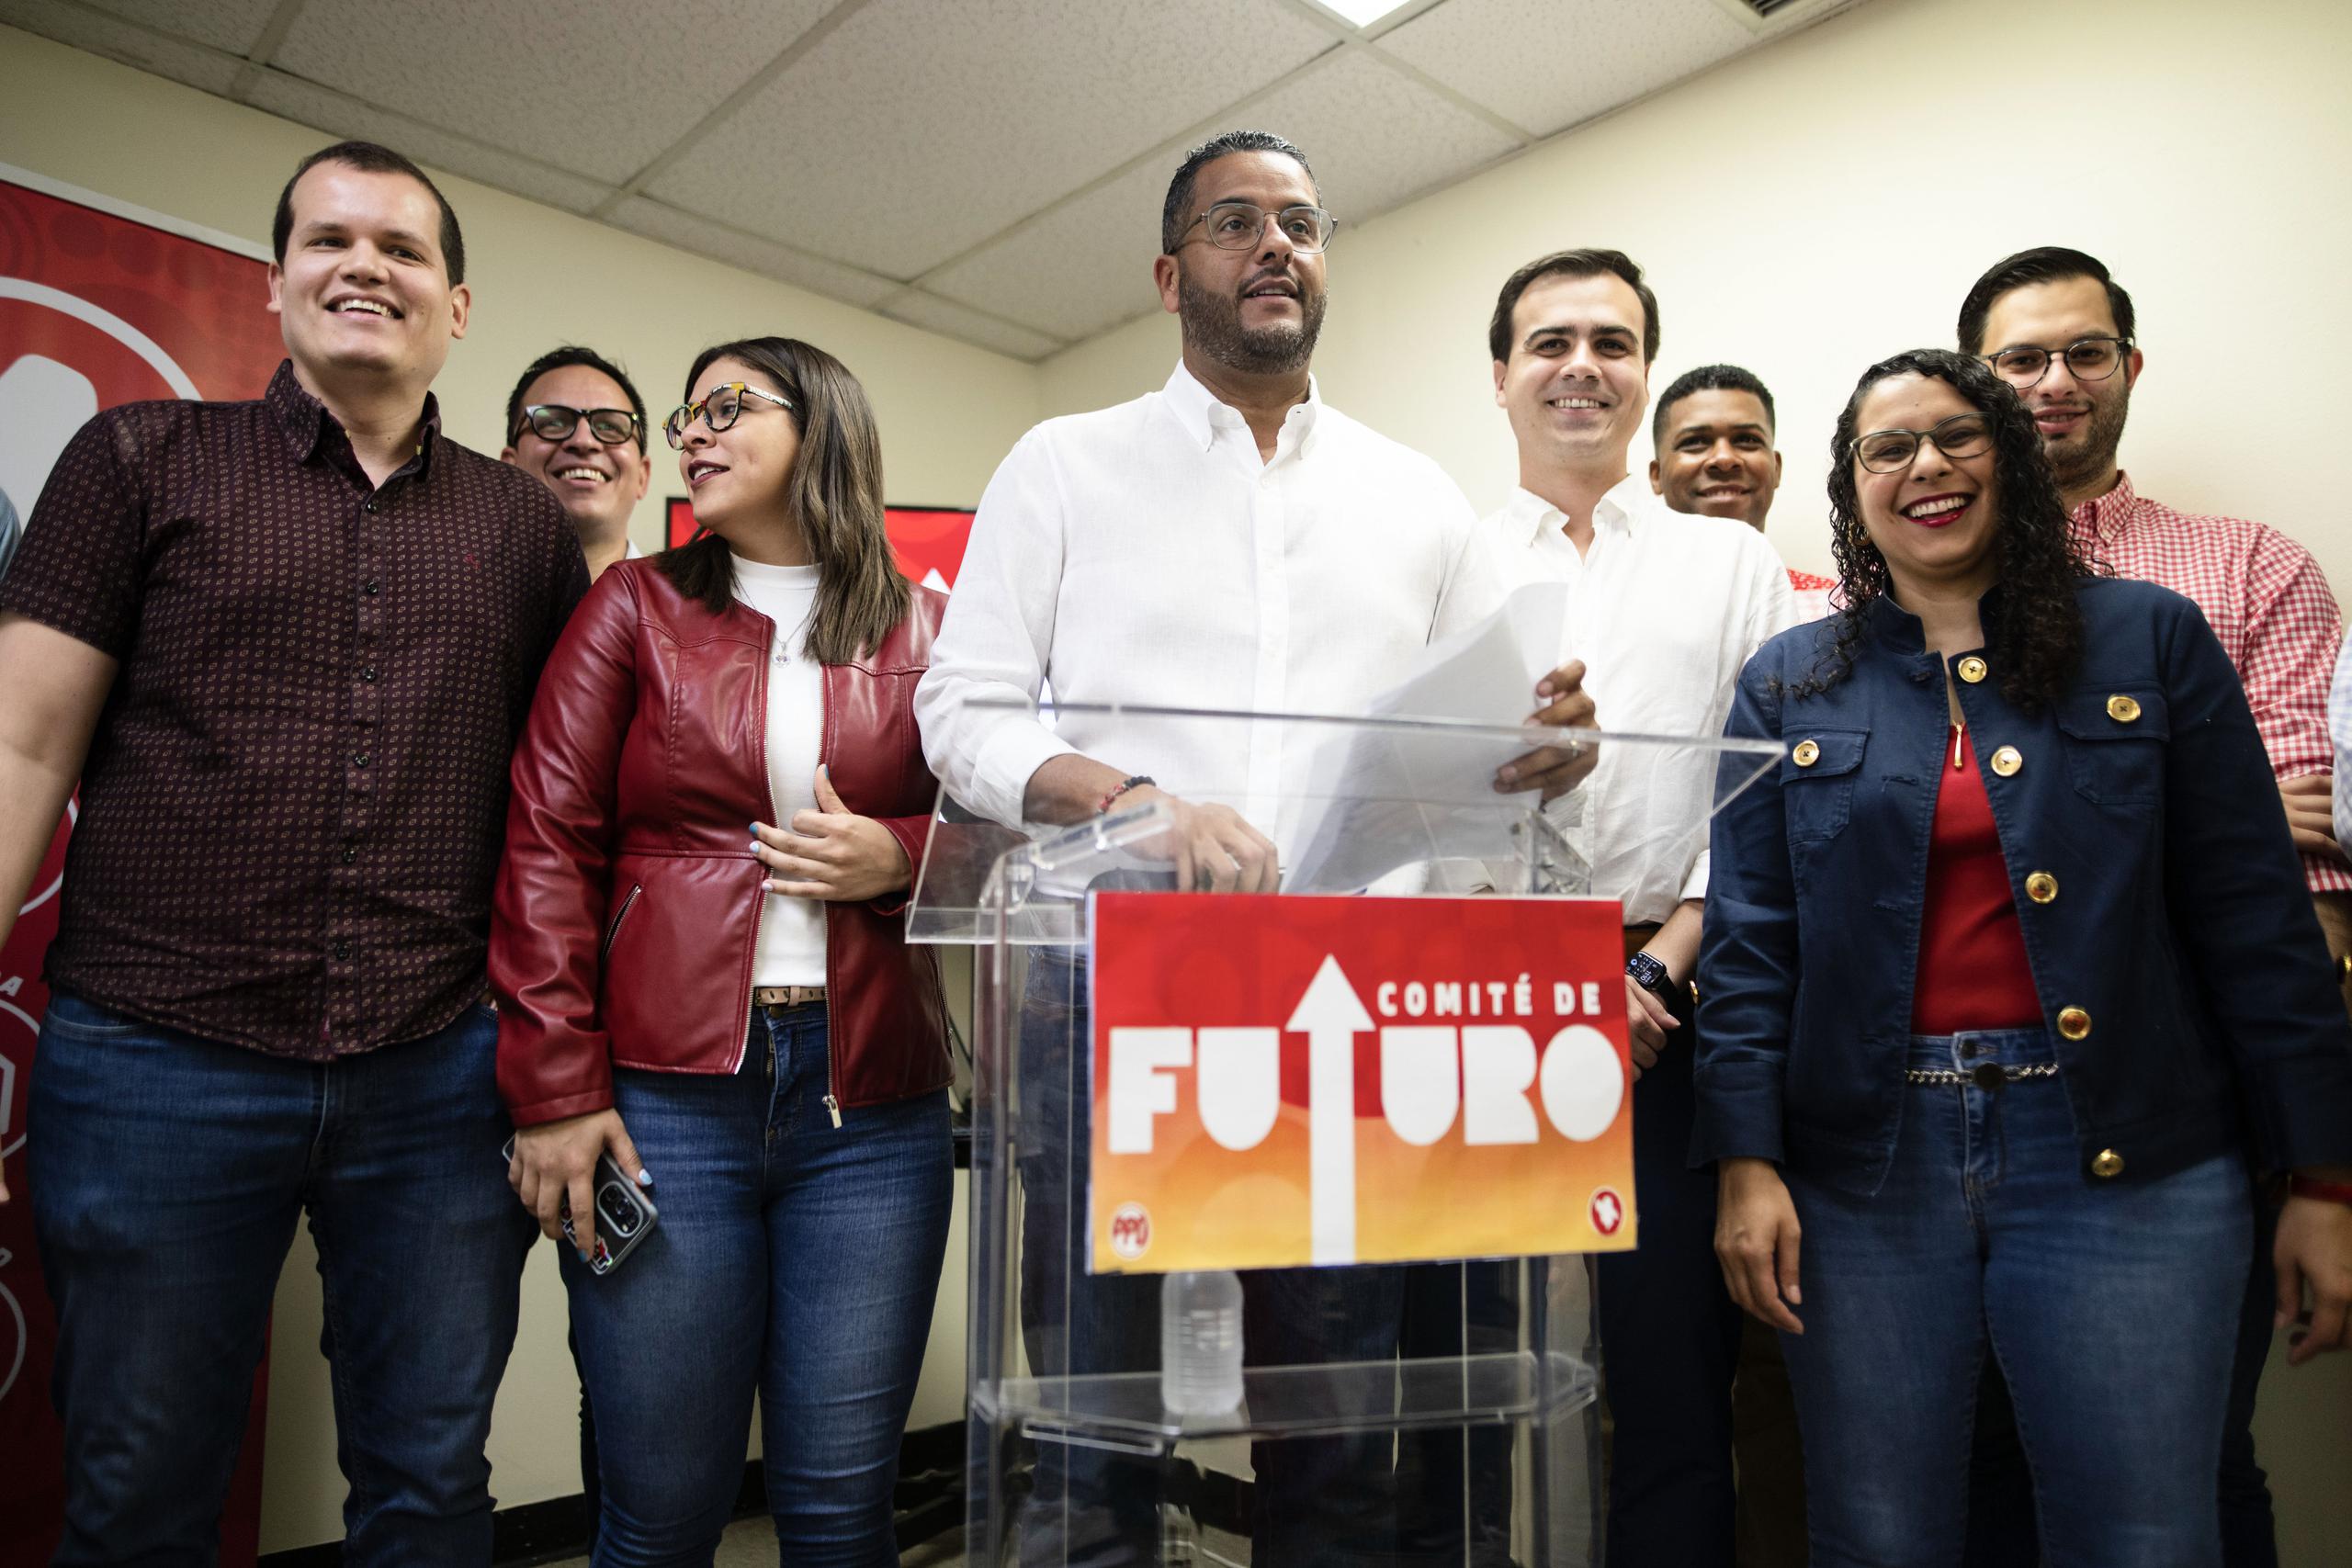 El presidente del PPD, Jesús Manuel Ortiz González, al centro, aseguró tener mucha fe en la capacidad de cambio de los jóvenes y exhortó a los demás miembros del partido a unirse al esfuerzo.